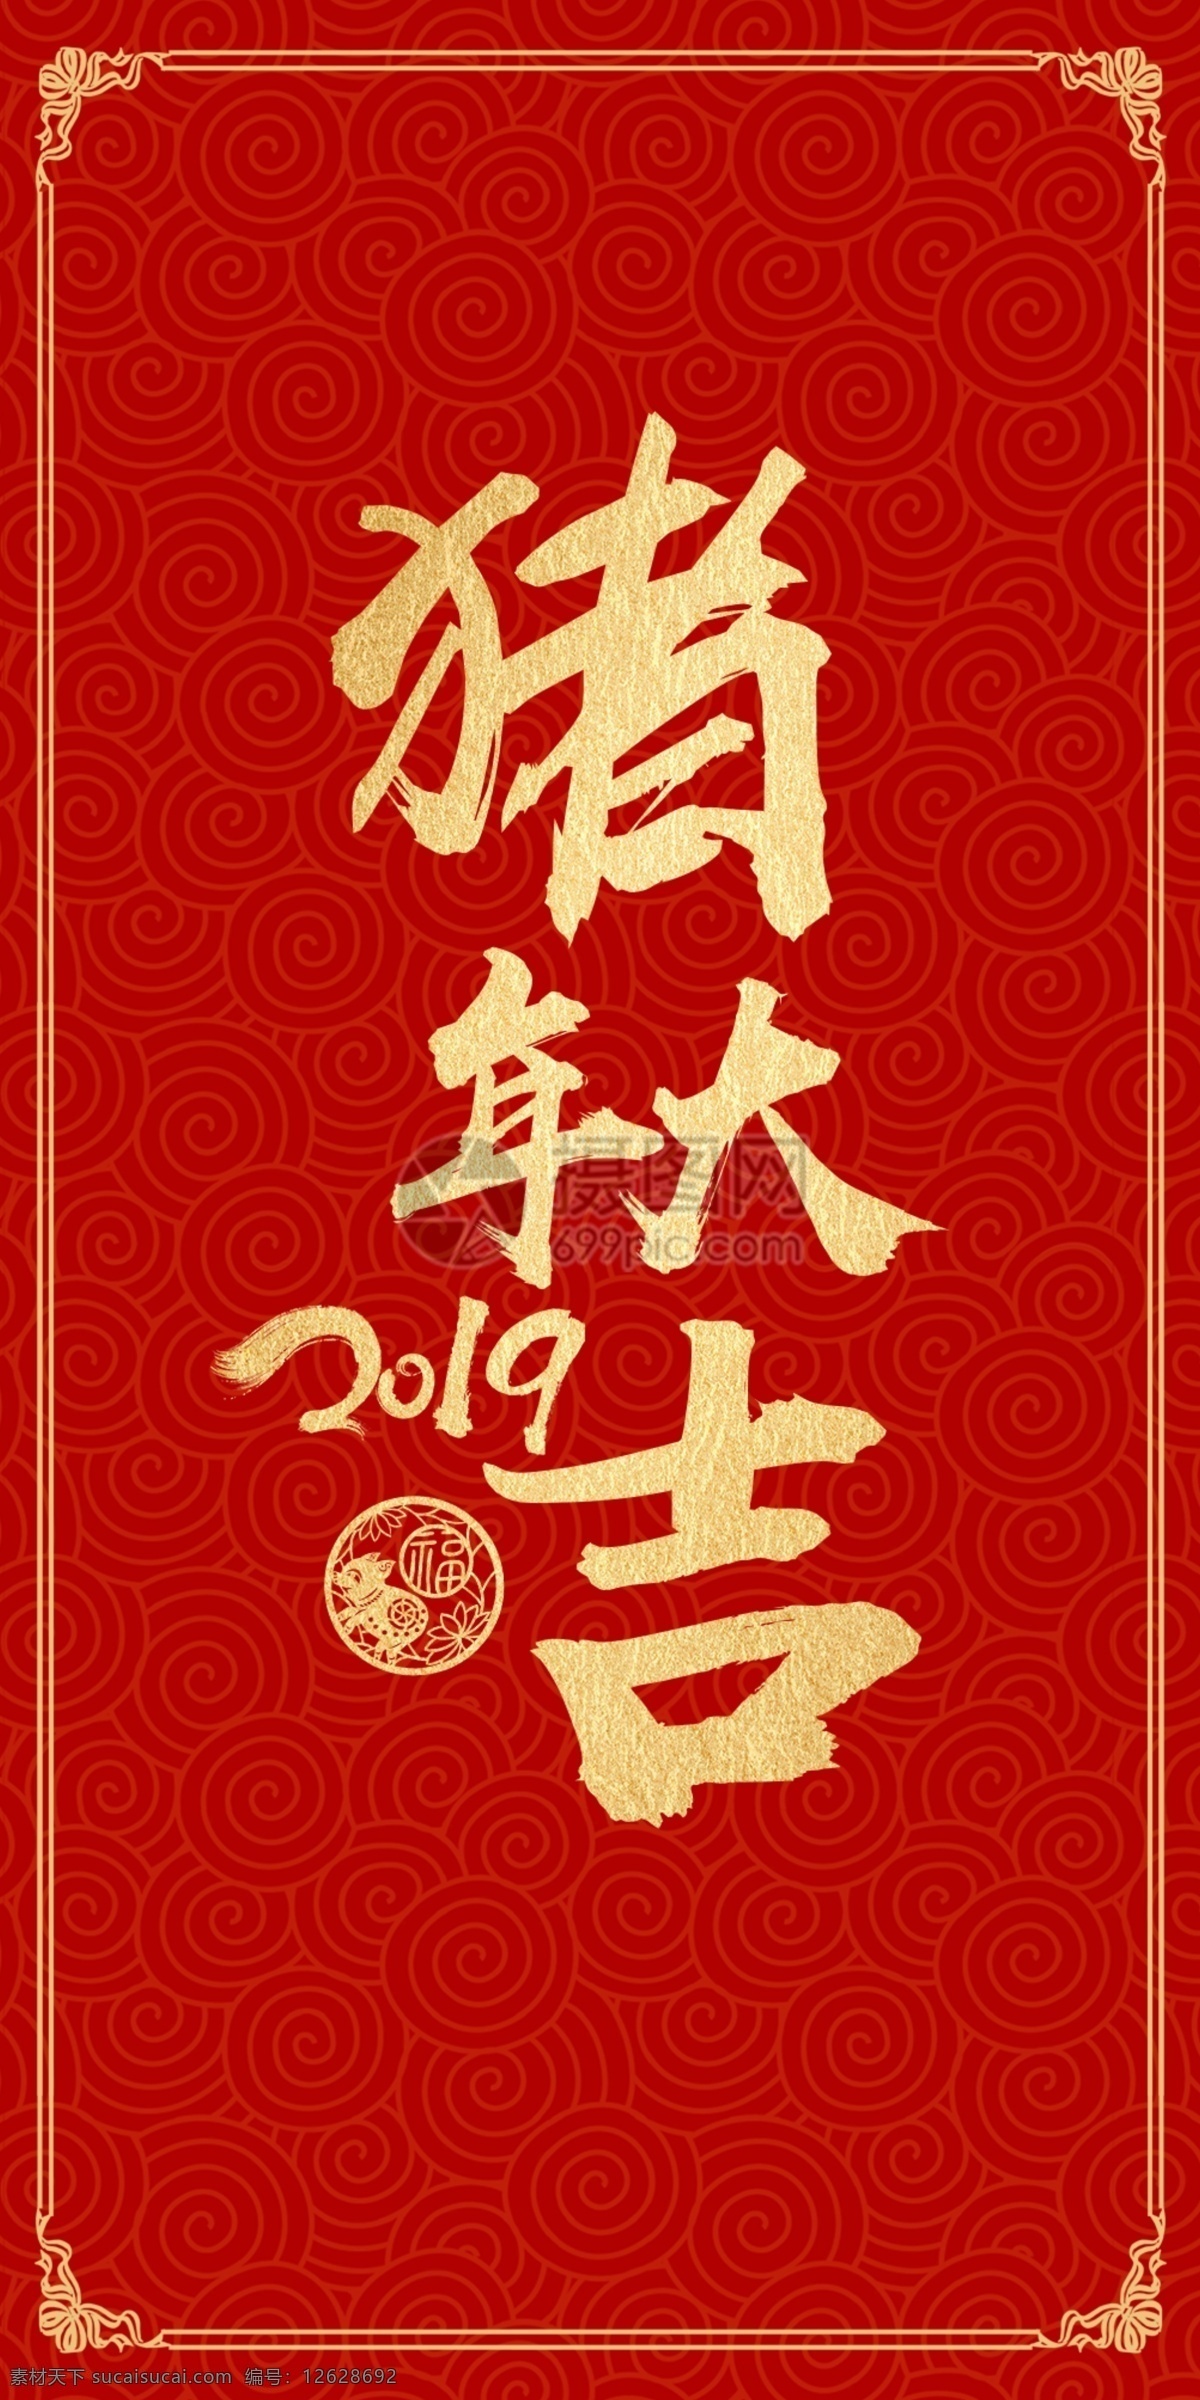 猪年 新春 祝福 红包 新年 传统 红色 祝贺 猪年红包 红包设计 新年红包 新春红包